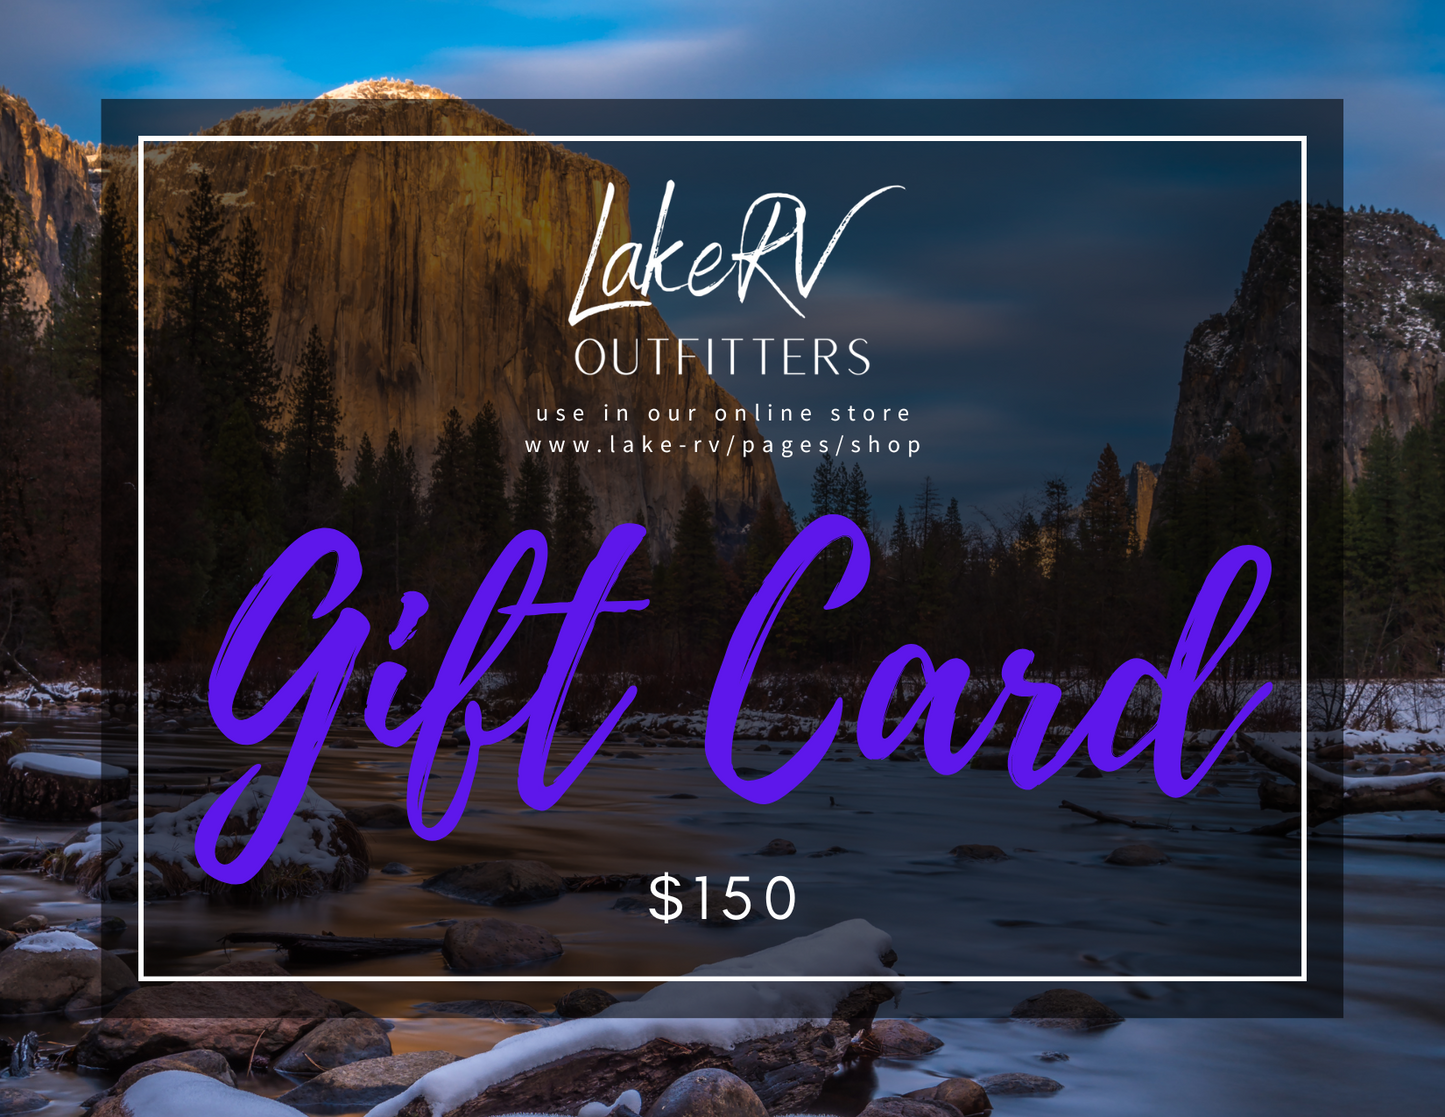 Lake RV Gift Card